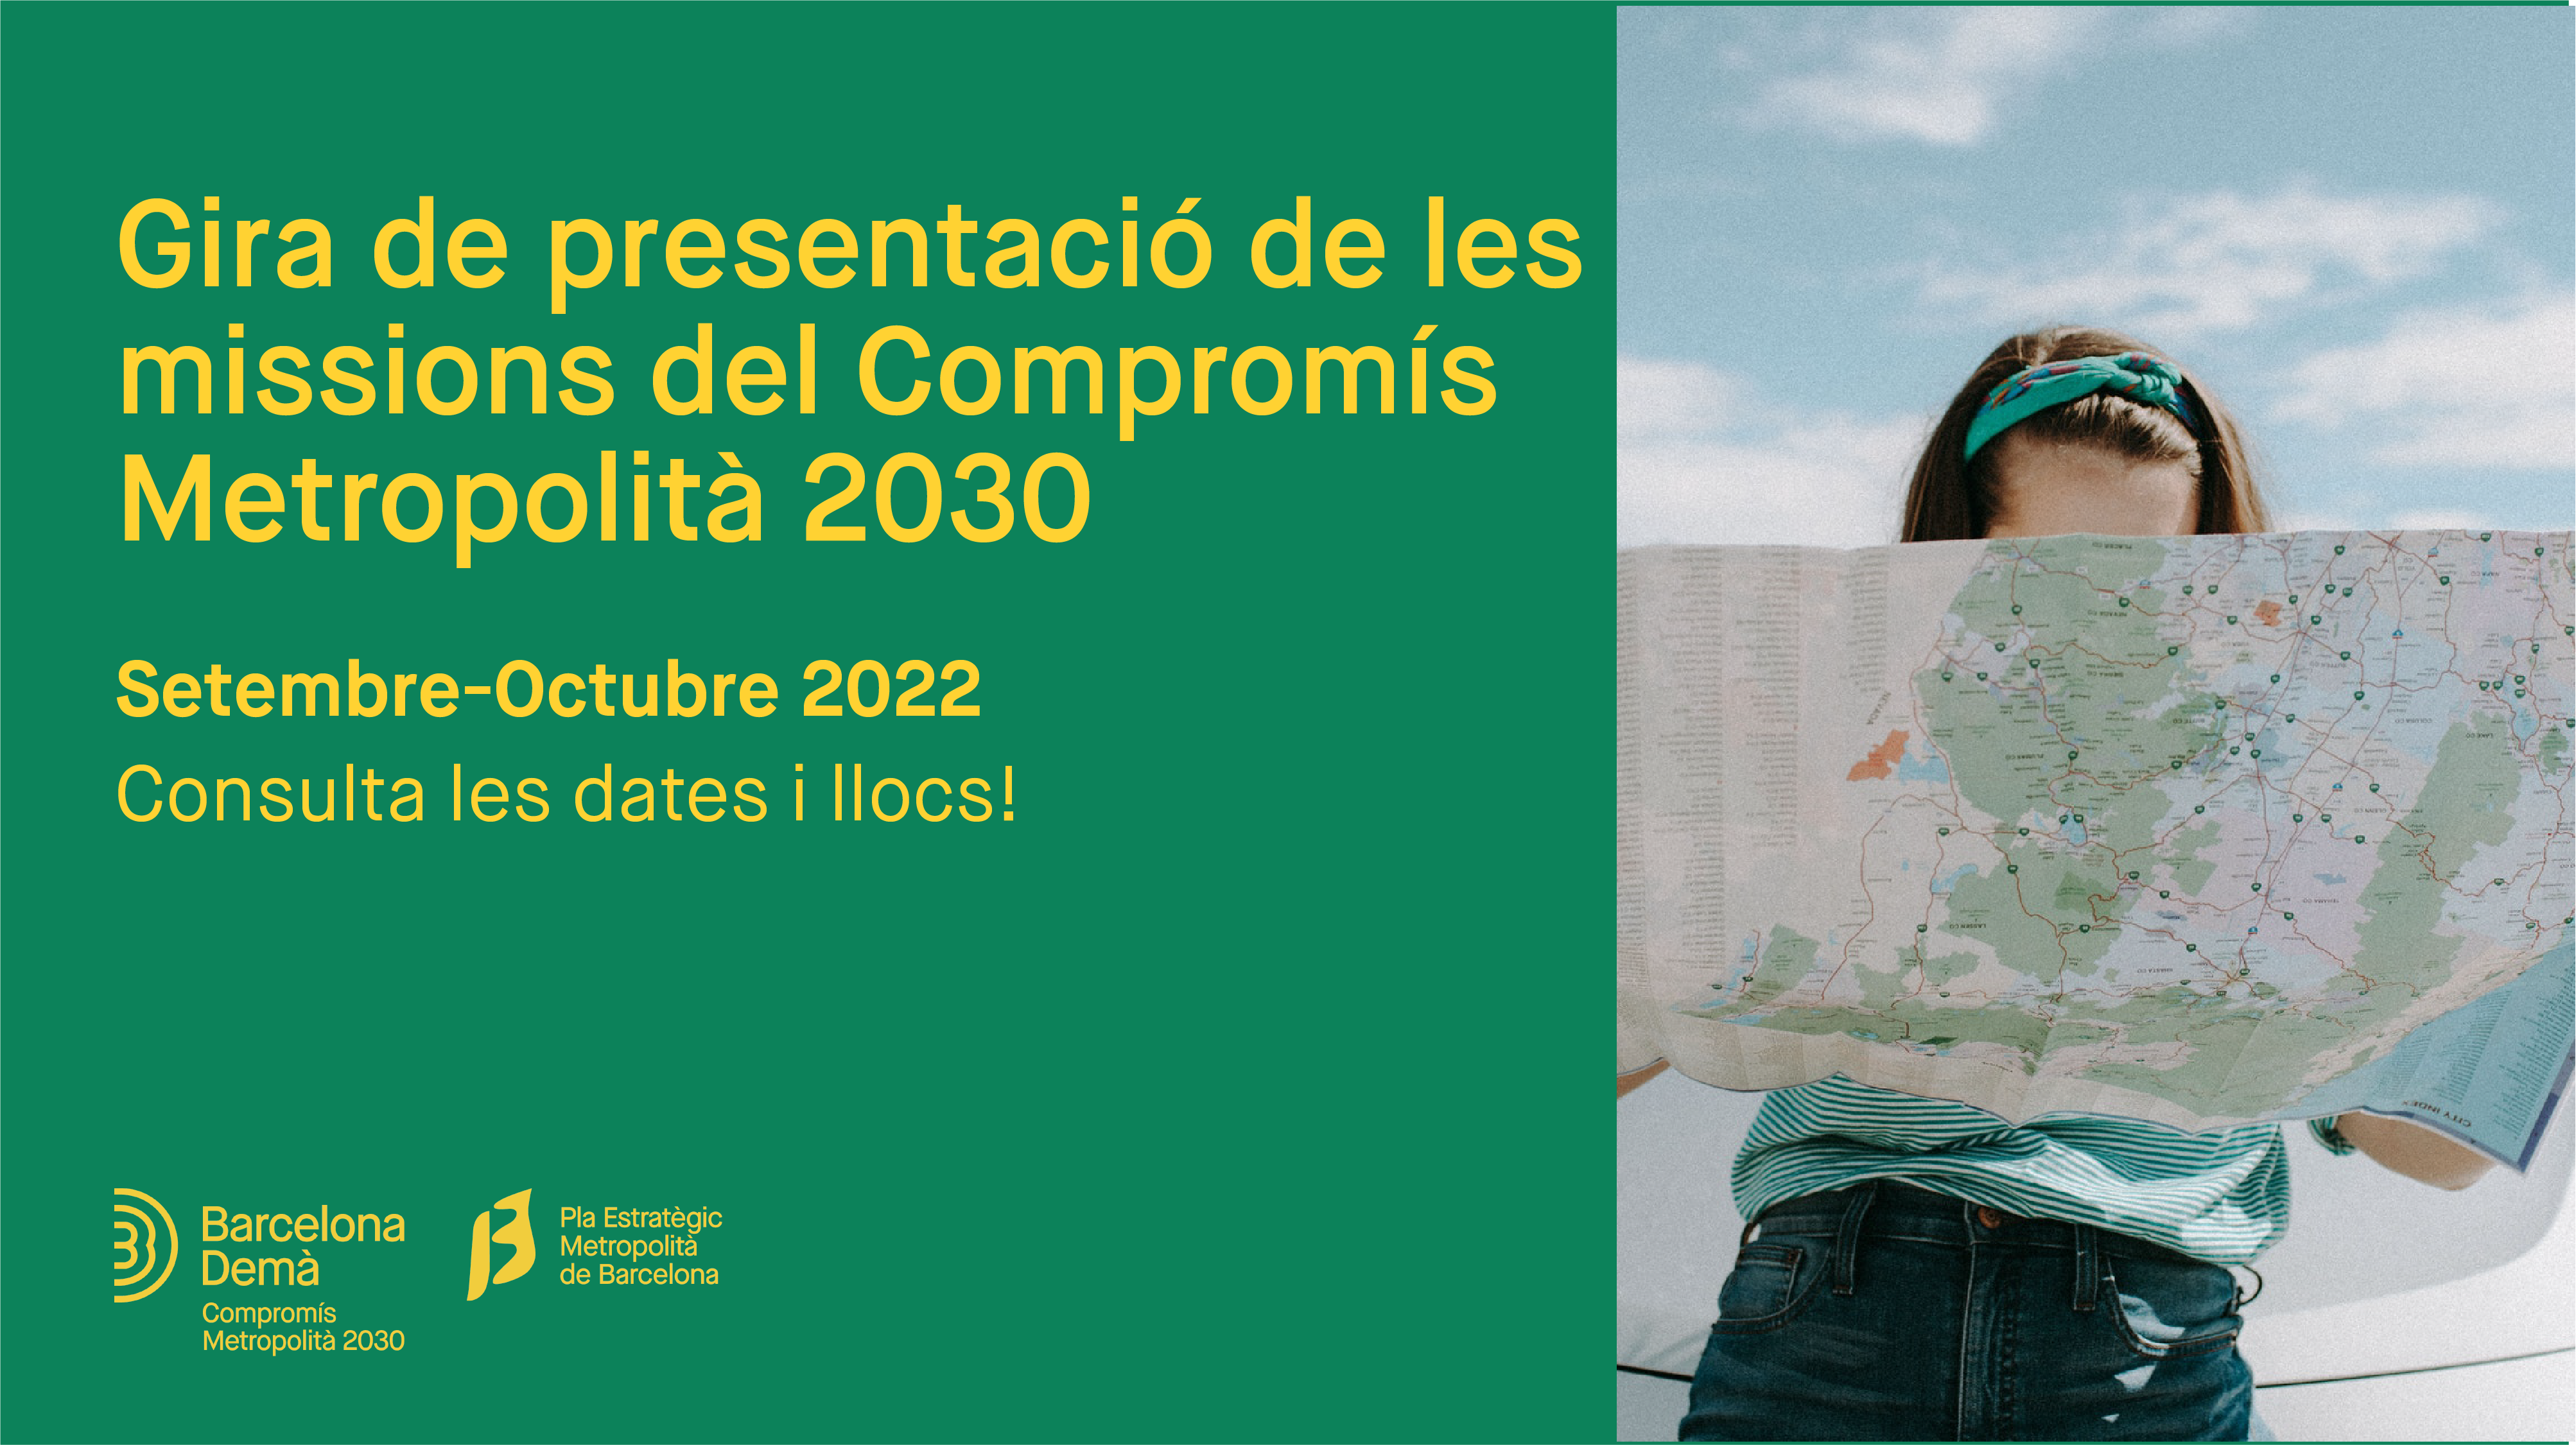 El PEMB organitza una gira a 8 municipis de la regió metropolitana de Barcelona que culminarà amb la presentació del Compromís Metropolità 2030